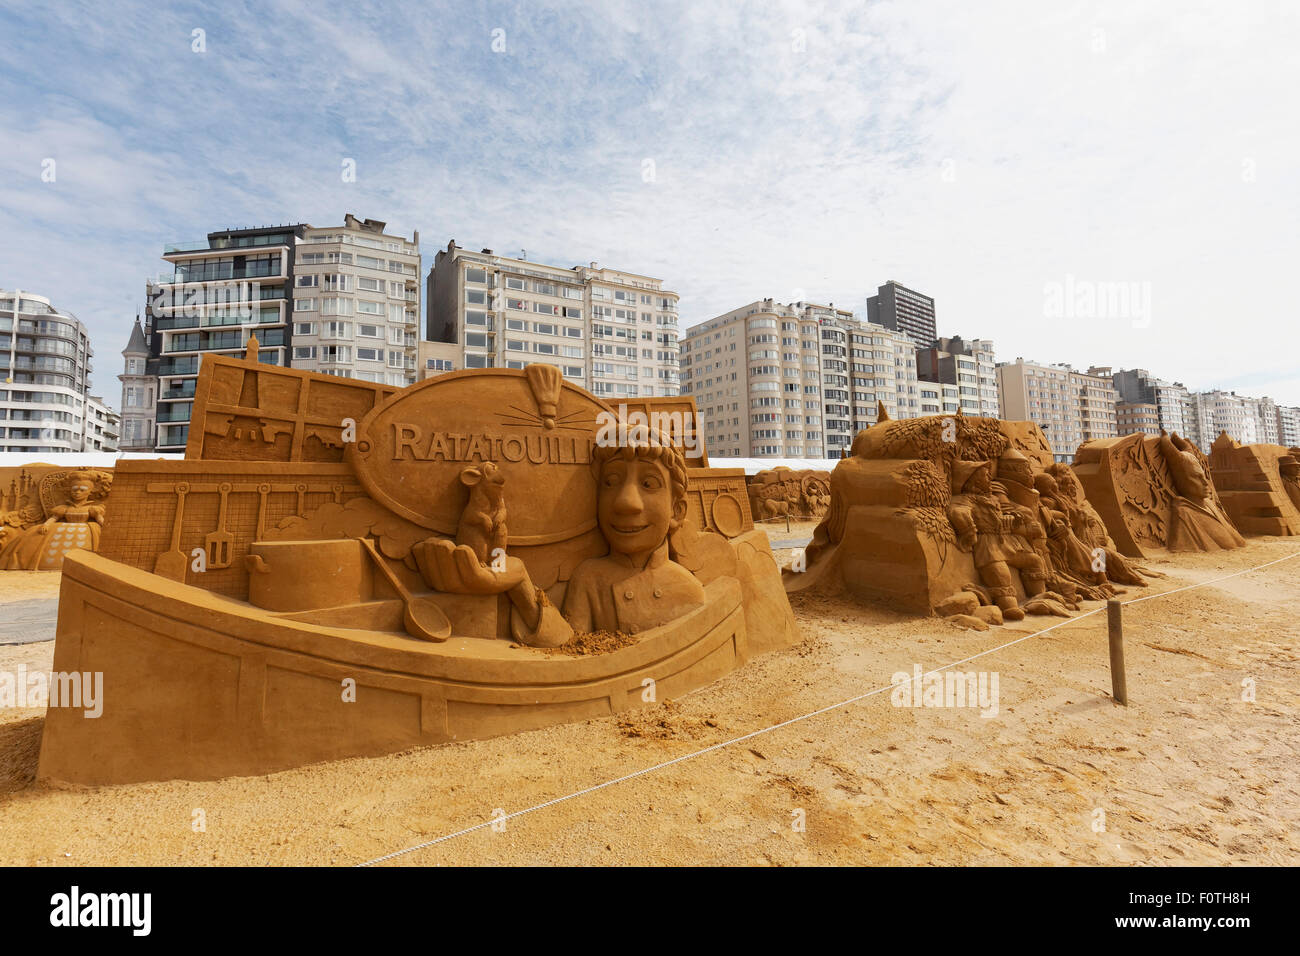 Sculptures de sable, de Walt Disney Ratatouille Film Festival de sculptures de sable, soleil d'été congelé, Oostende, Flandre occidentale Banque D'Images